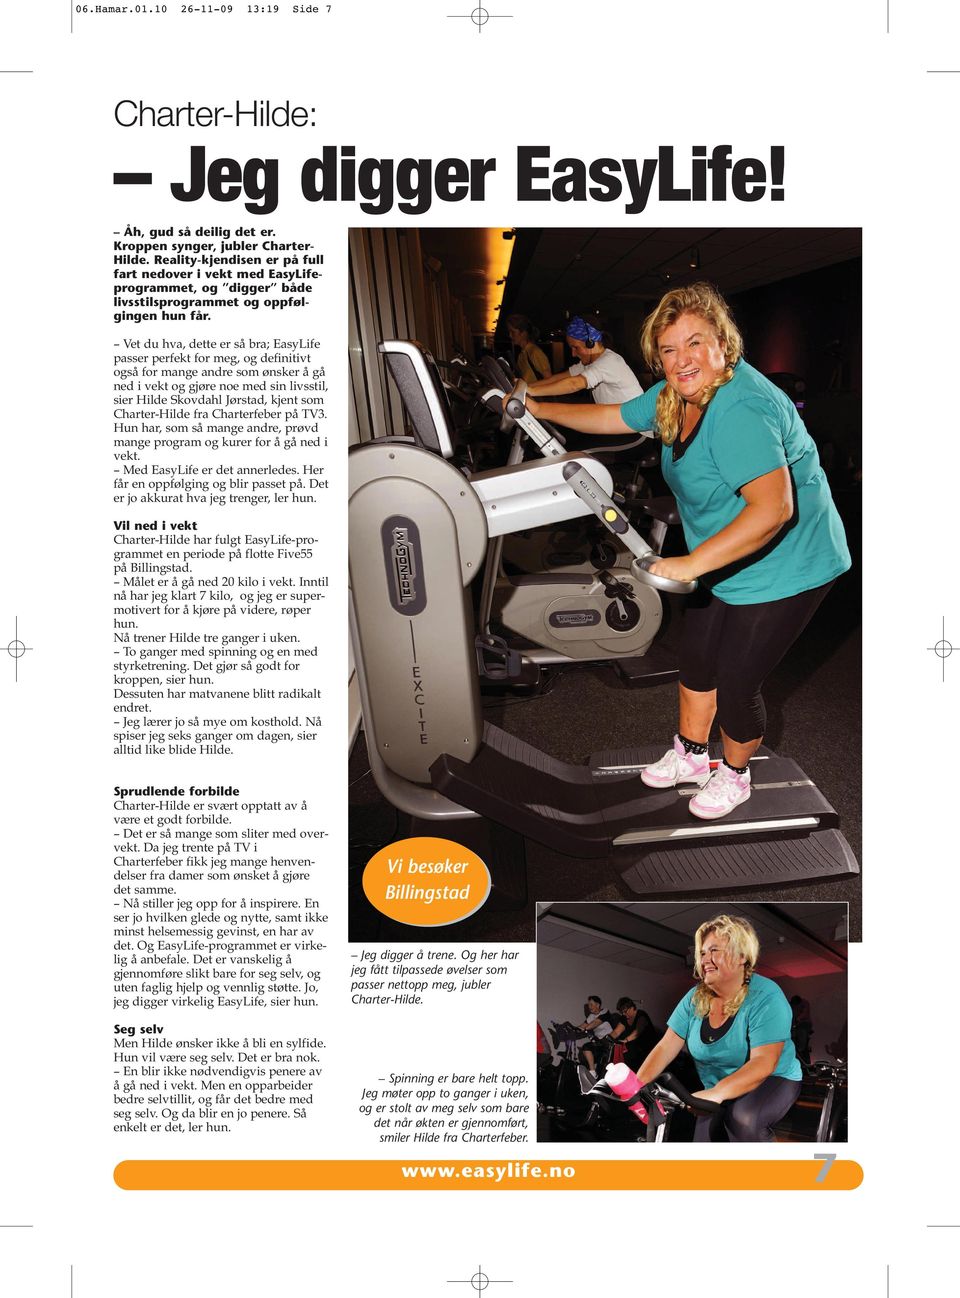 Vet du hva, dette er så bra; EasyLife passer perfekt for meg, og definitivt også for mange andre som ønsker å gå ned i vekt og gjøre noe med sin livsstil, sier Hilde Skovdahl Jørstad, kjent som